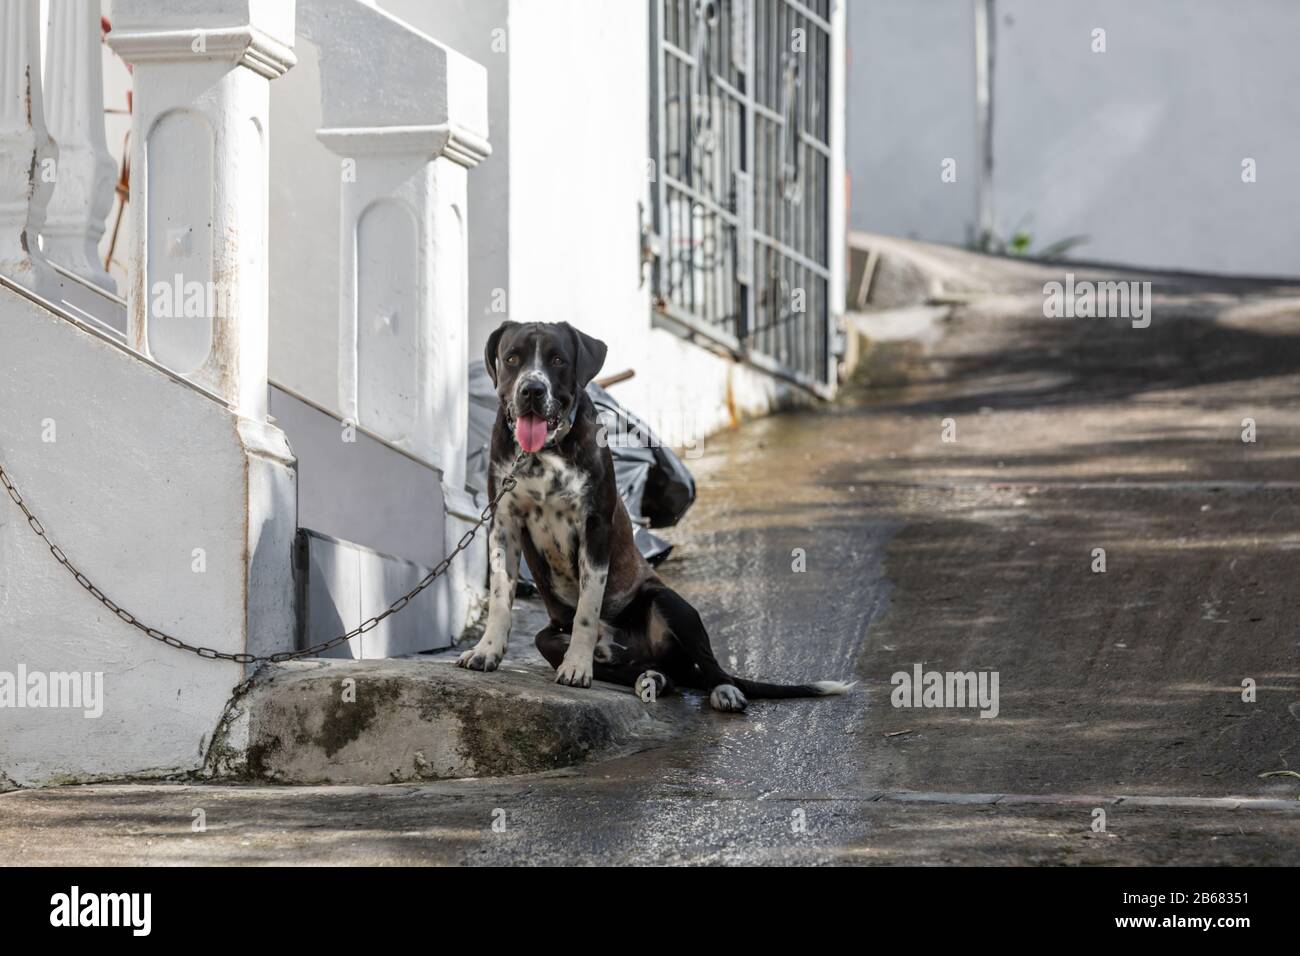 Perro sentado en un camino de entrada en St Martin Foto de stock